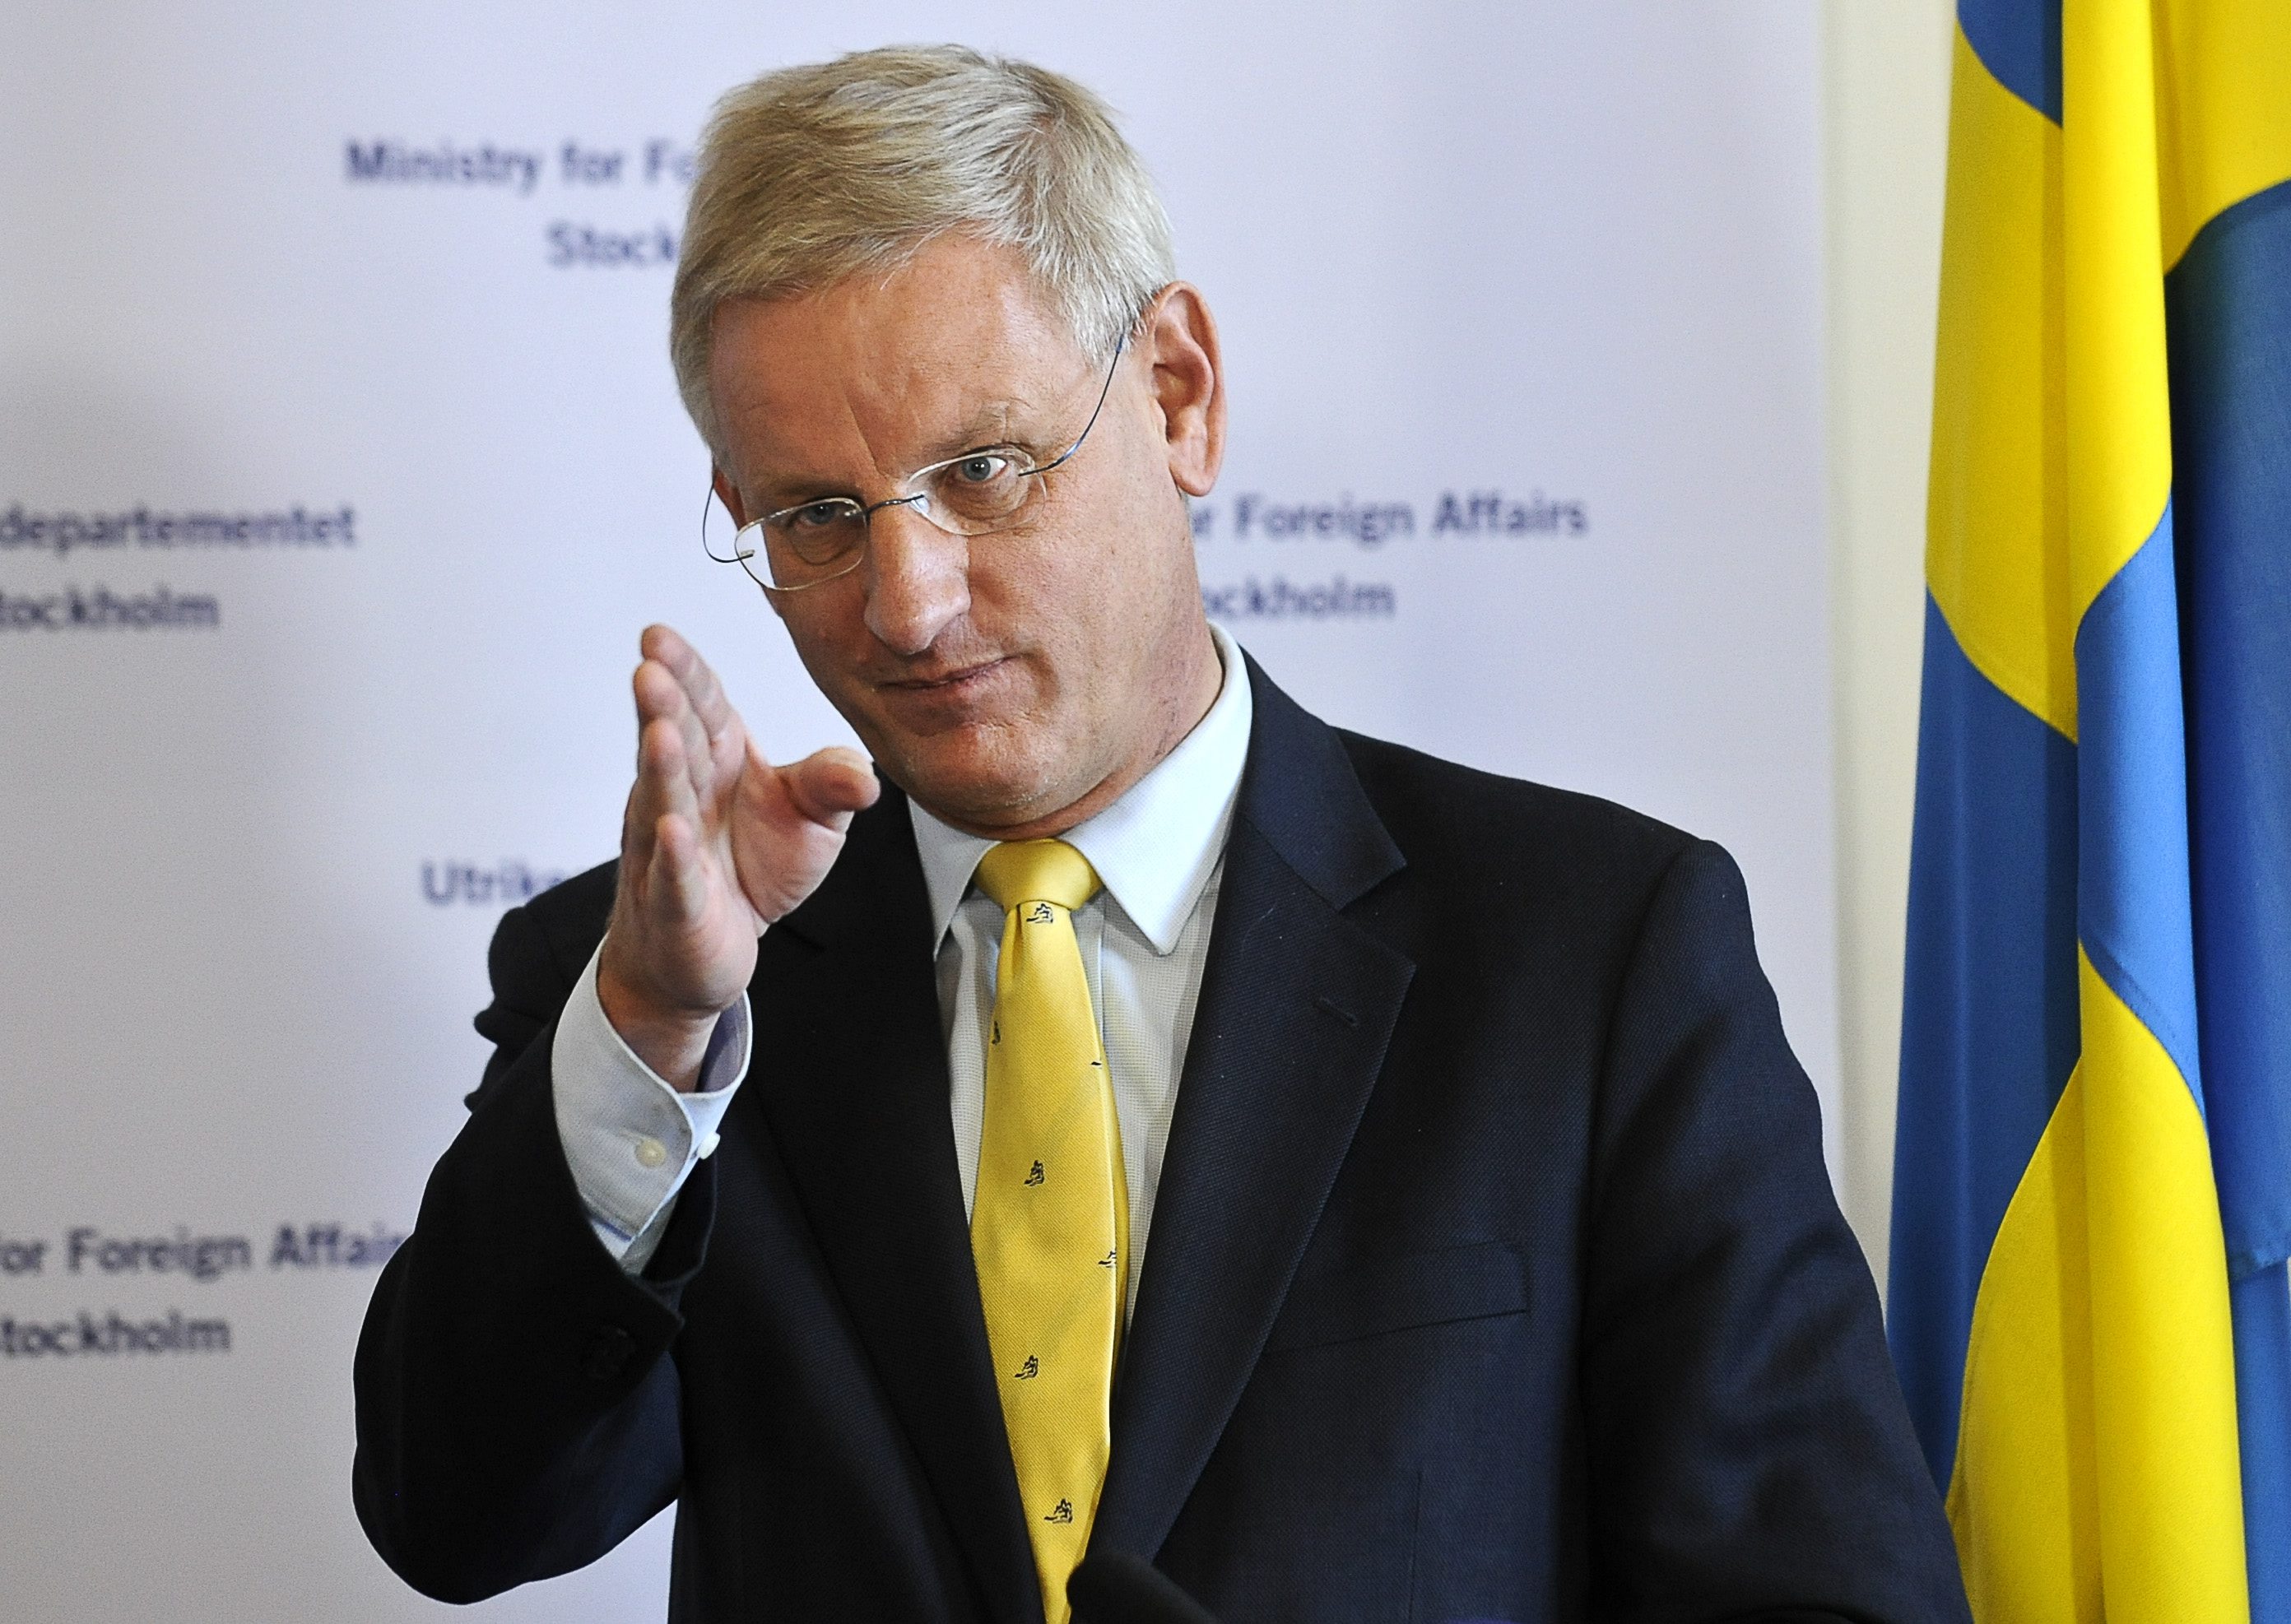 Carl Bildt, utrikesminister, (M), 62.